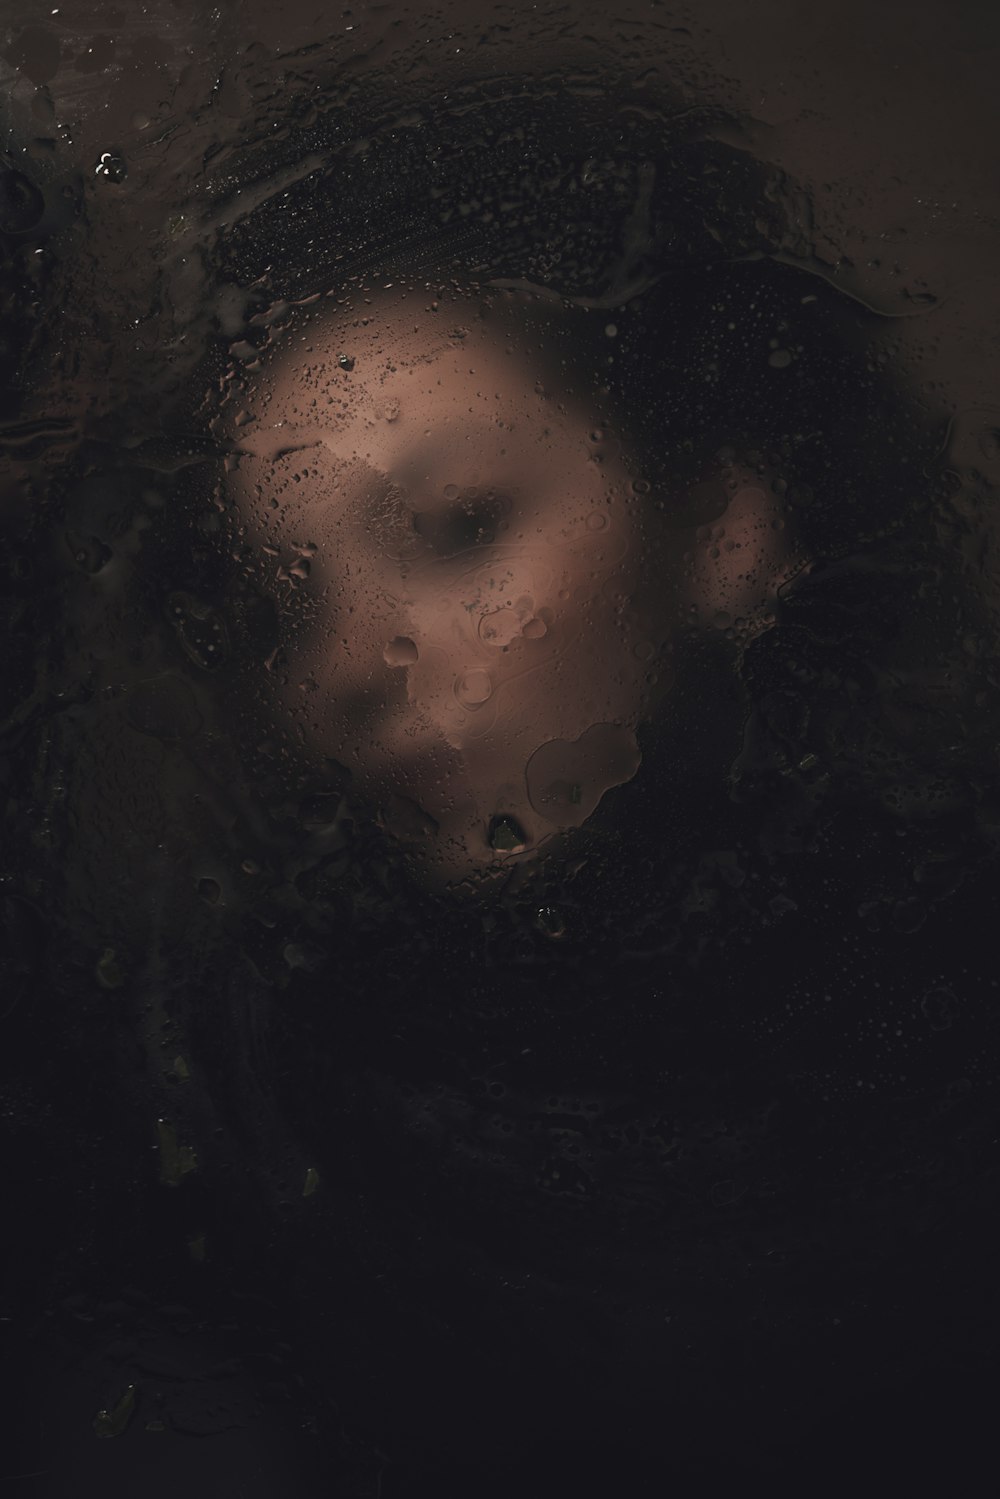 Das Gesicht einer Frau ist durch ein regenbedecktes Fenster zu sehen